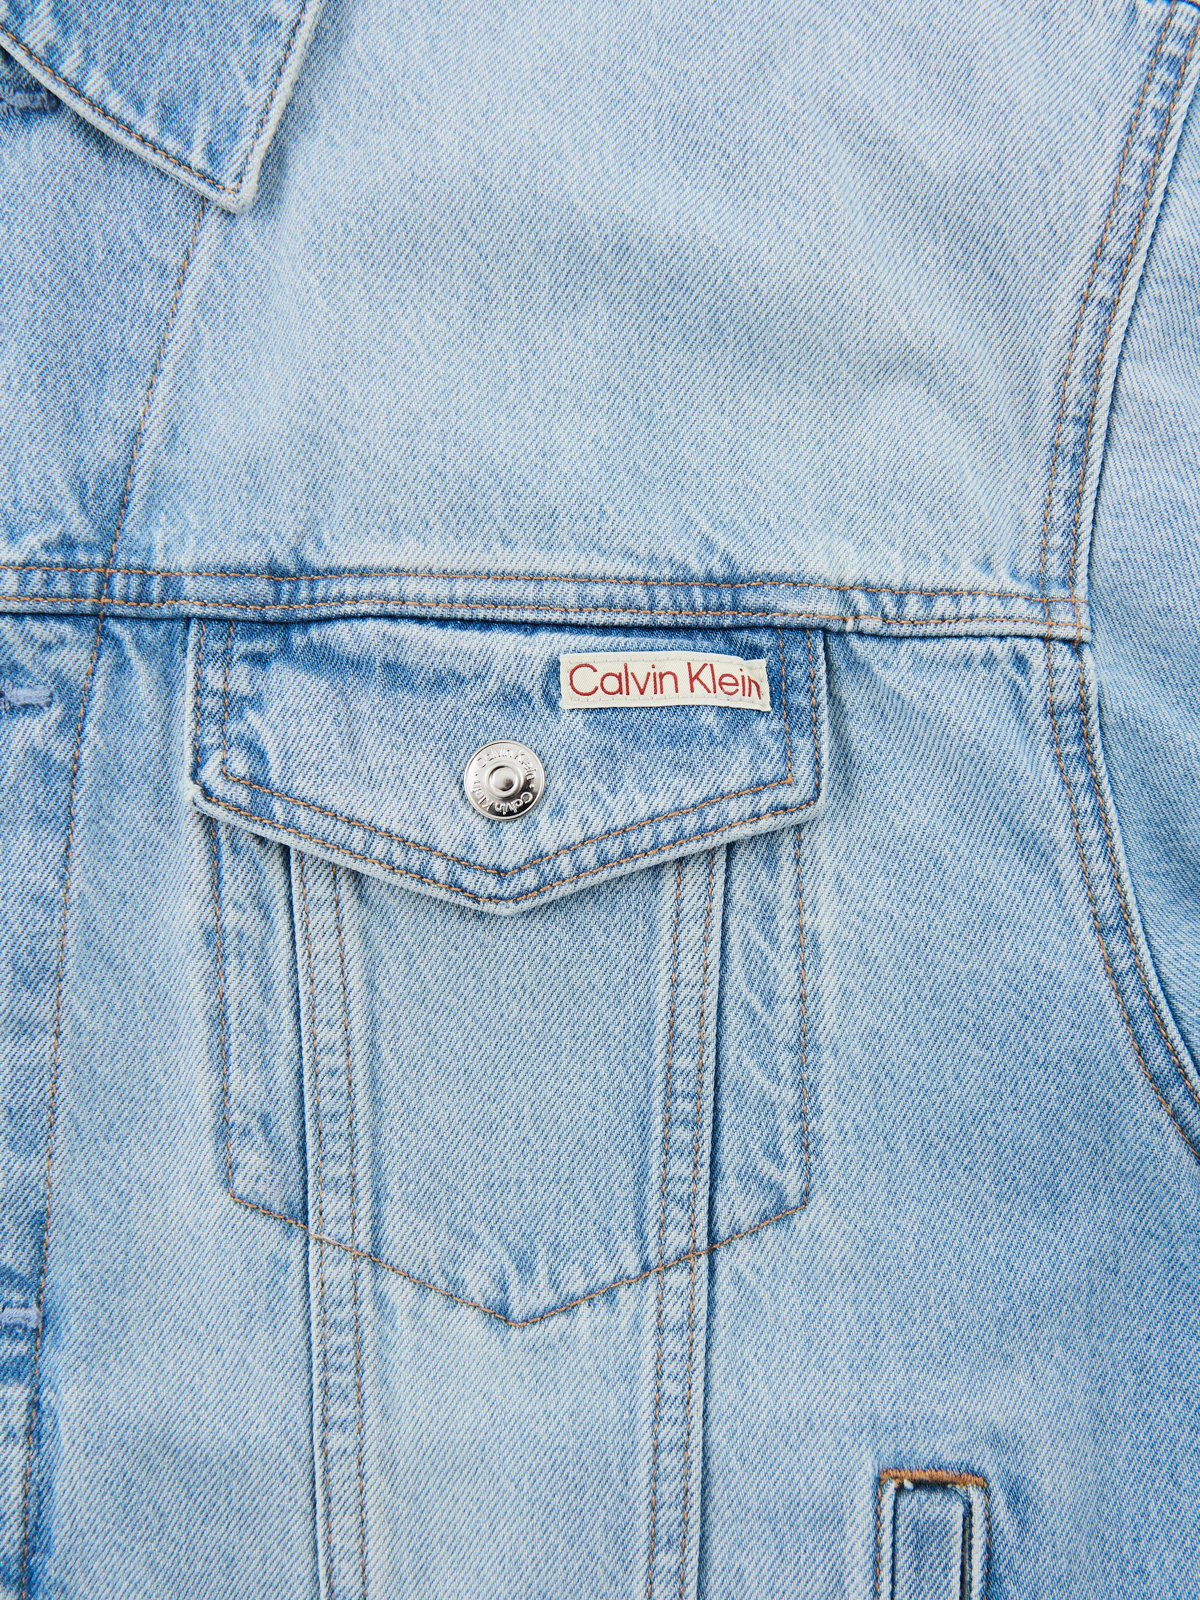 カルバン・クライン ジーンズの 90s マーブルトラッカーデニムジャケット 胸のフラップポケット